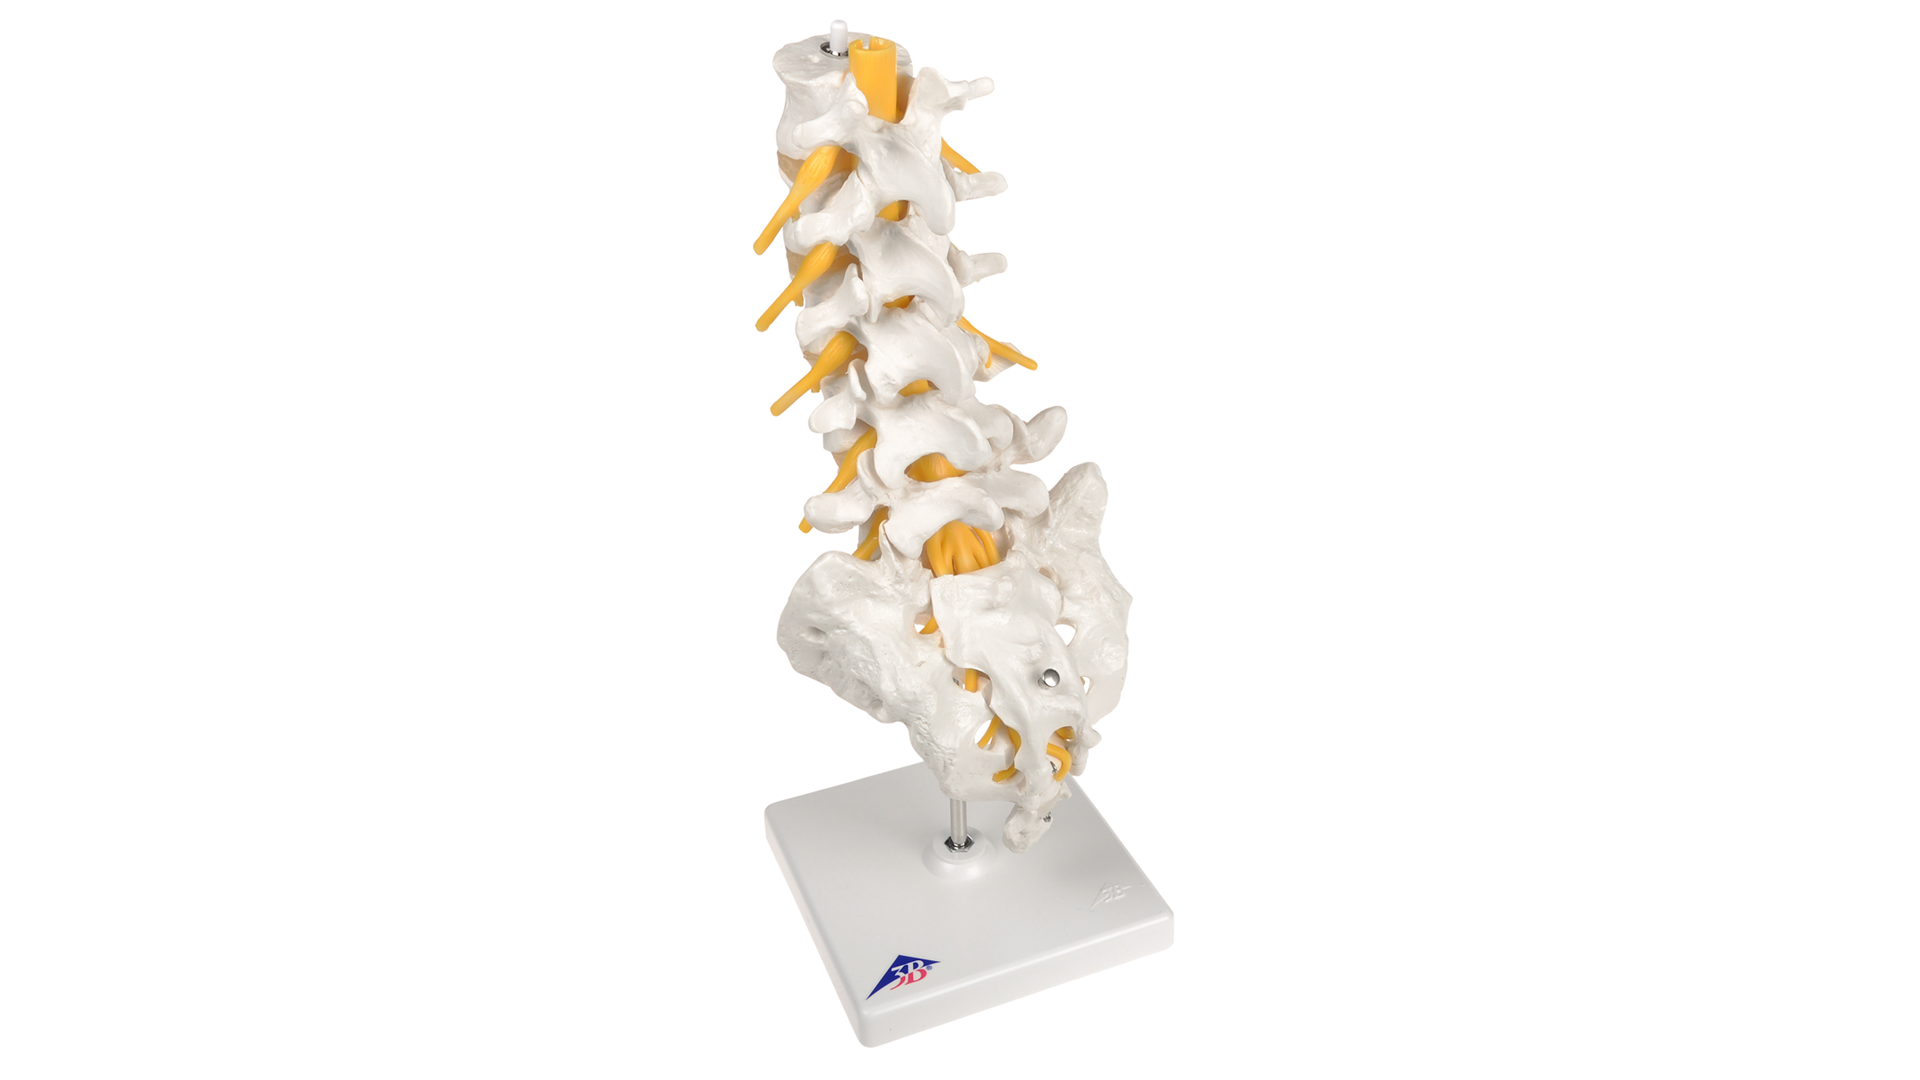 Spine Models